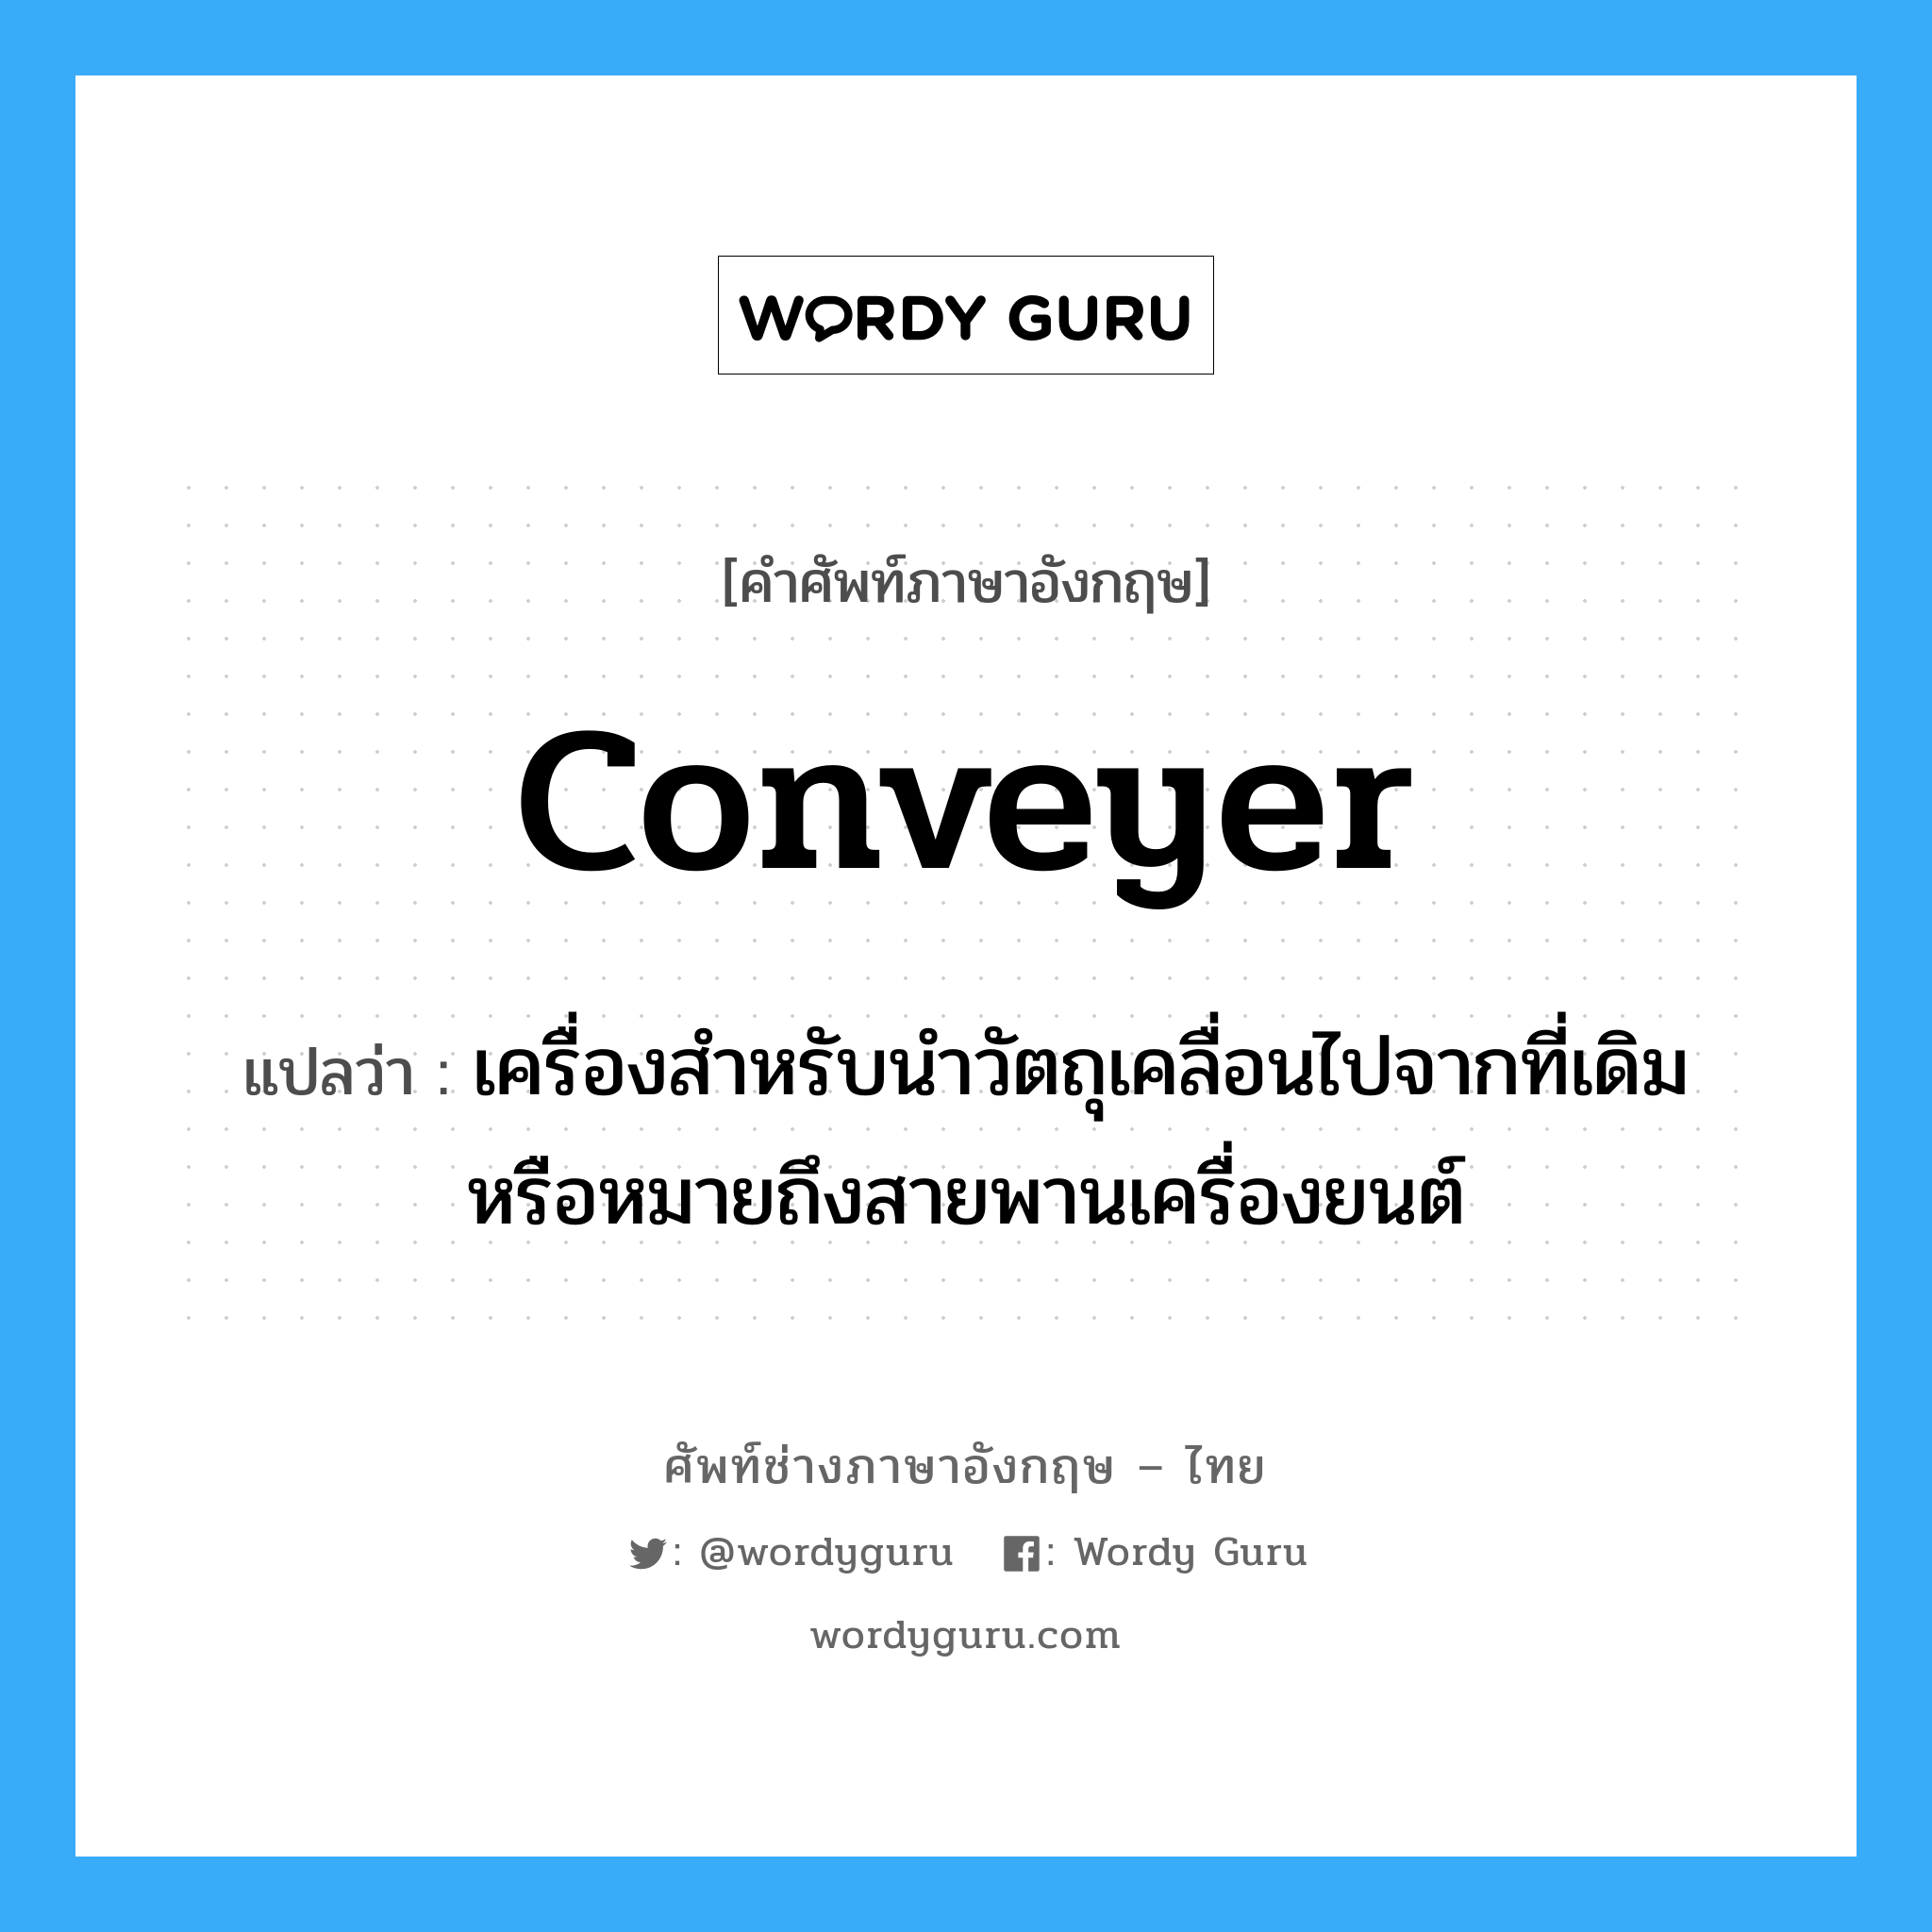 conveyer แปลว่า?, คำศัพท์ช่างภาษาอังกฤษ - ไทย conveyer คำศัพท์ภาษาอังกฤษ conveyer แปลว่า เครื่องสำหรับนำวัตถุเคลื่อนไปจากที่เดิม หรือหมายถึงสายพานเครื่องยนต์